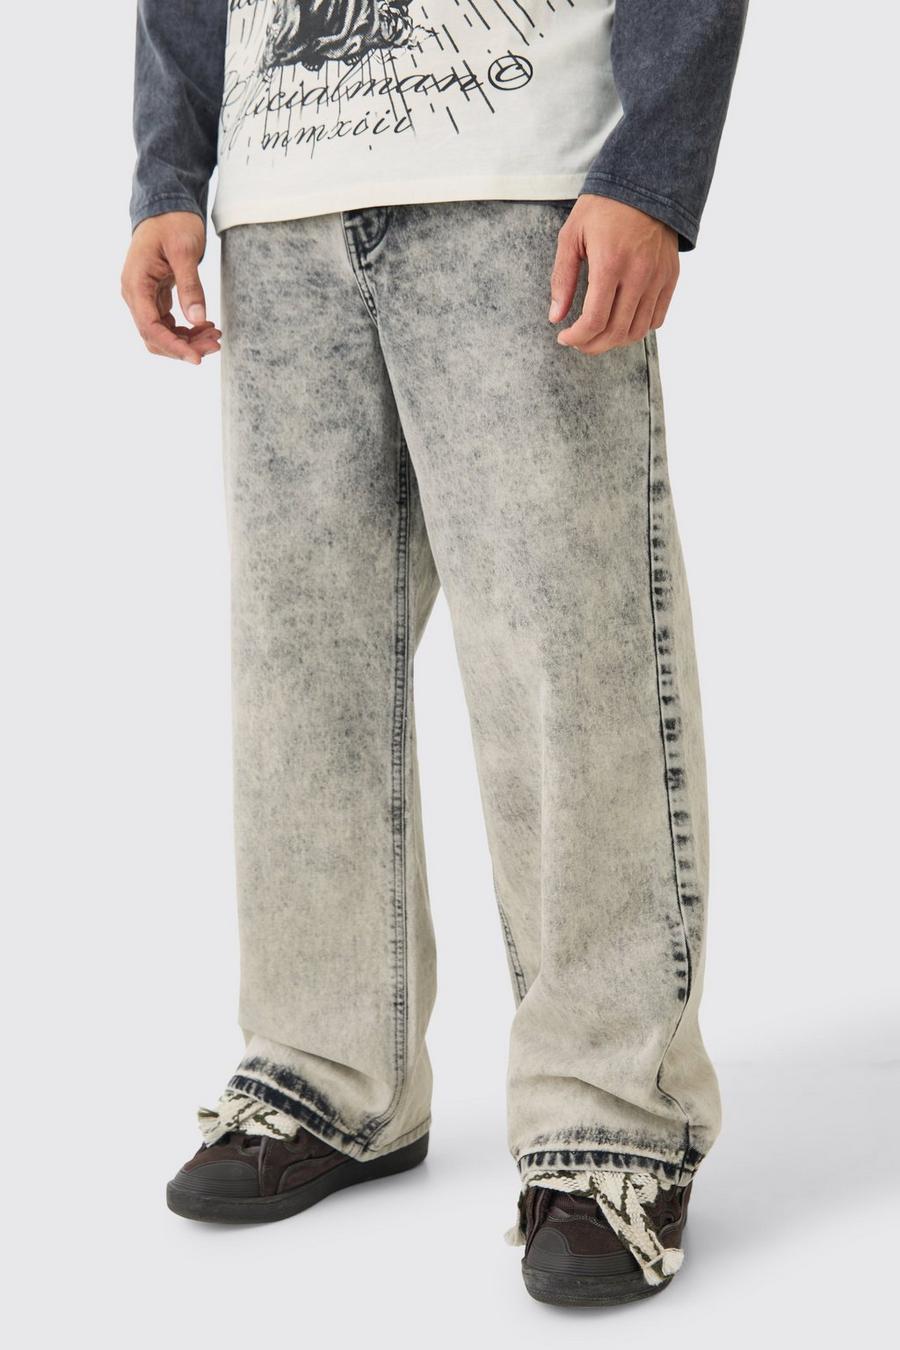 Extreem Baggy Onbewerkte Acid Wash Gebleekte Jeans In Charcoal